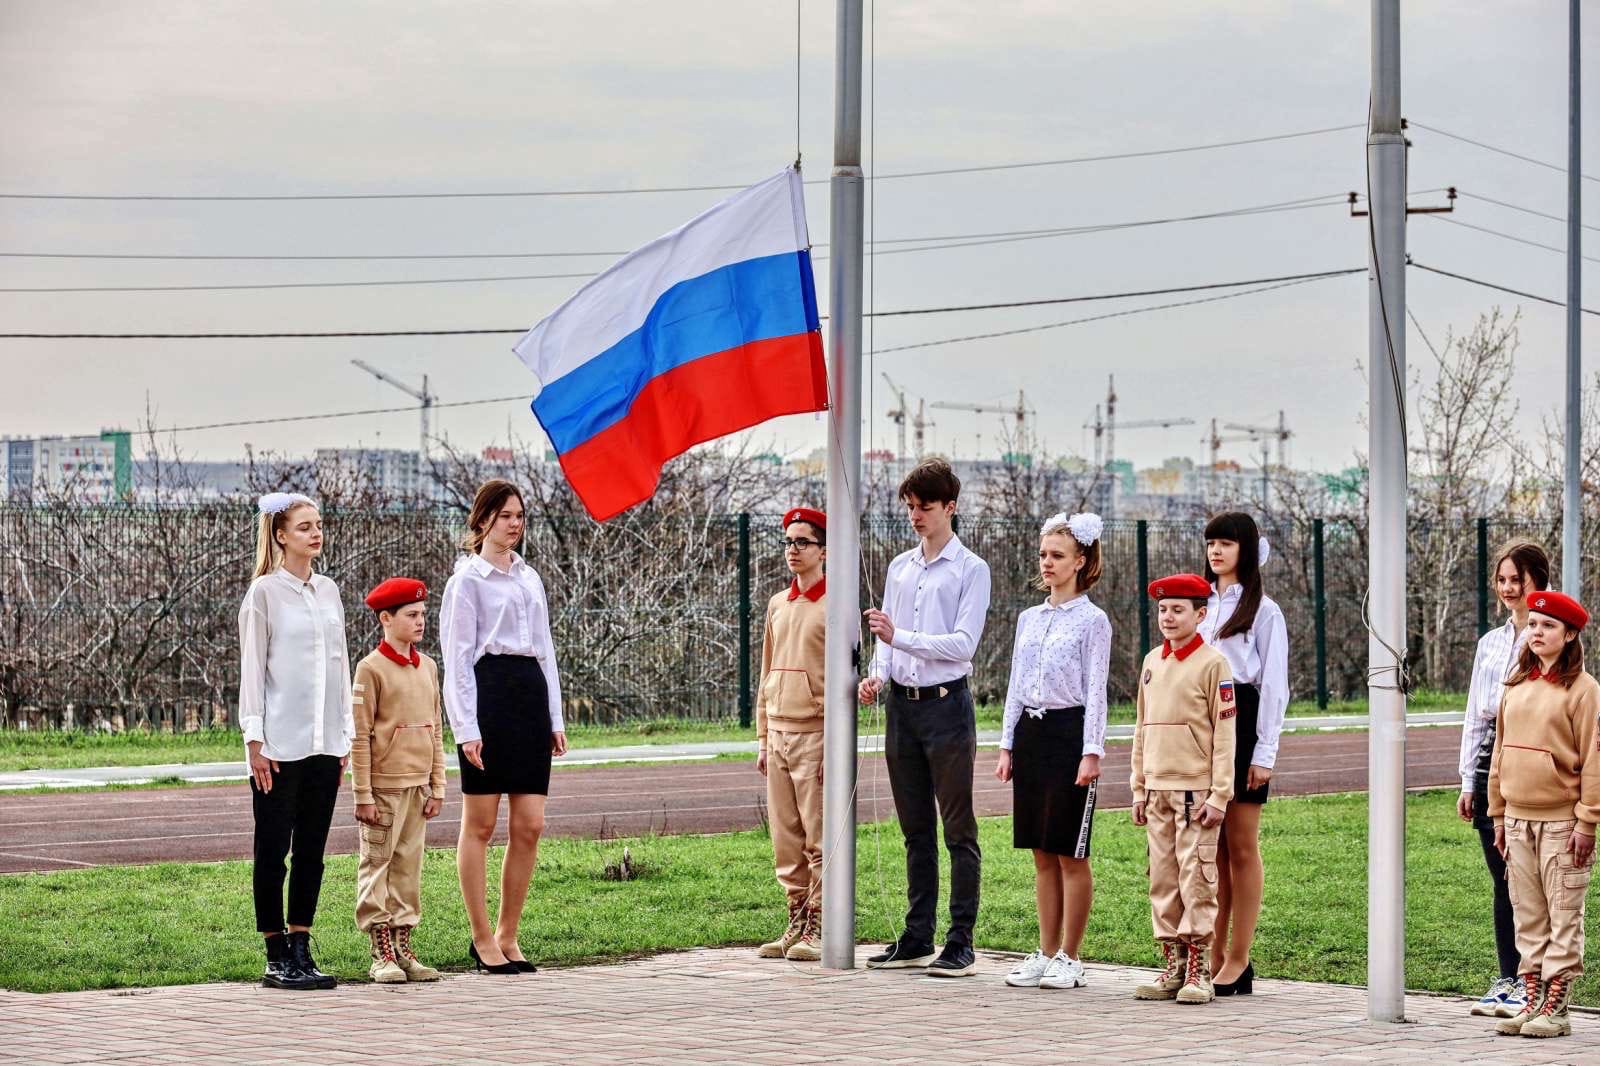 Обязаны ли образовательные учреждения размещать флаг Российской Федерации